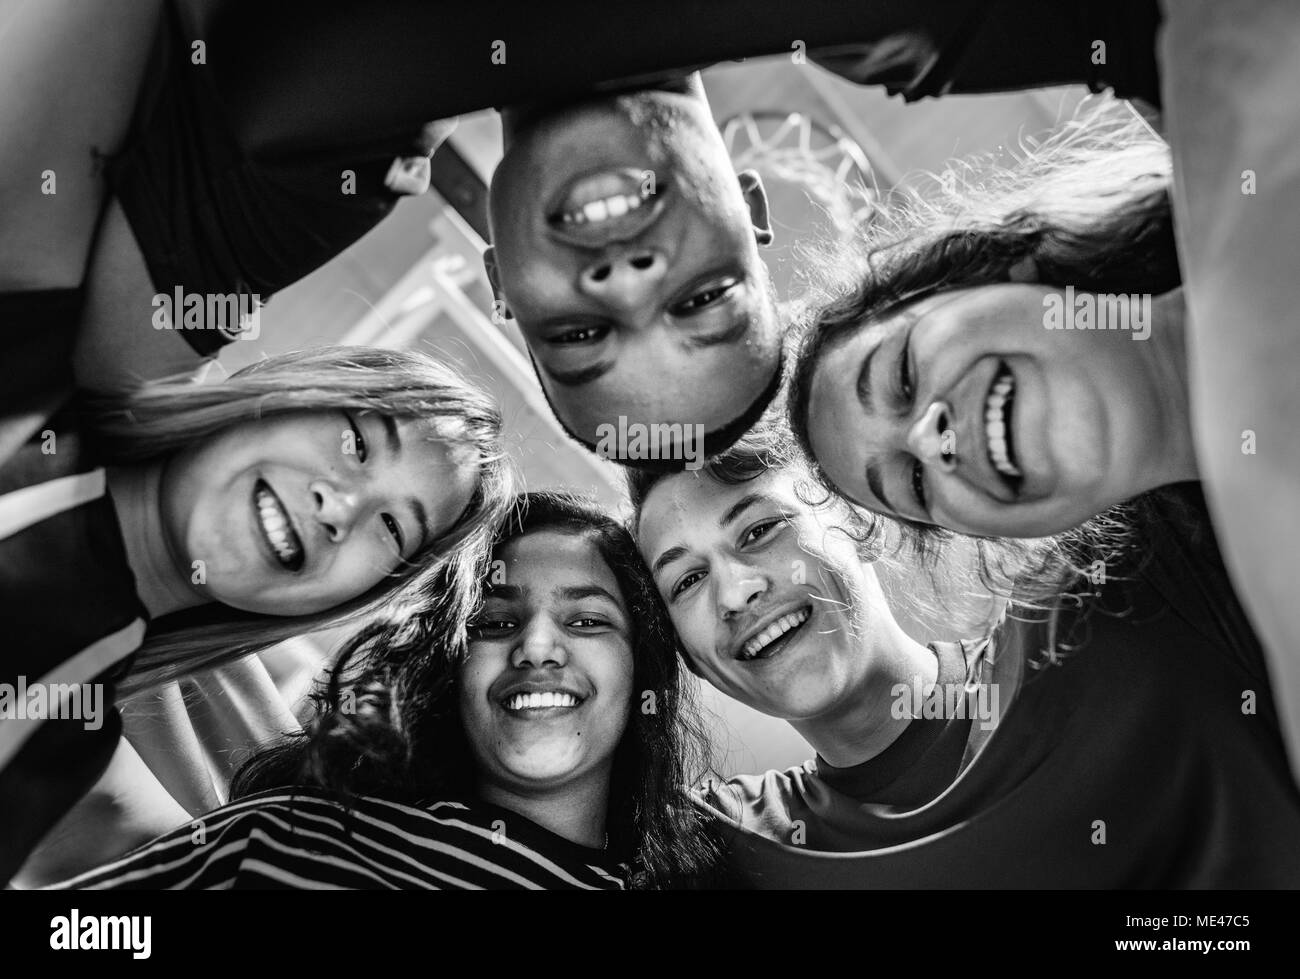 Gruppe von Jugendlichen Freunde auf einen Basketballplatz Teamarbeit und Zweisamkeit Konzept Stockfoto